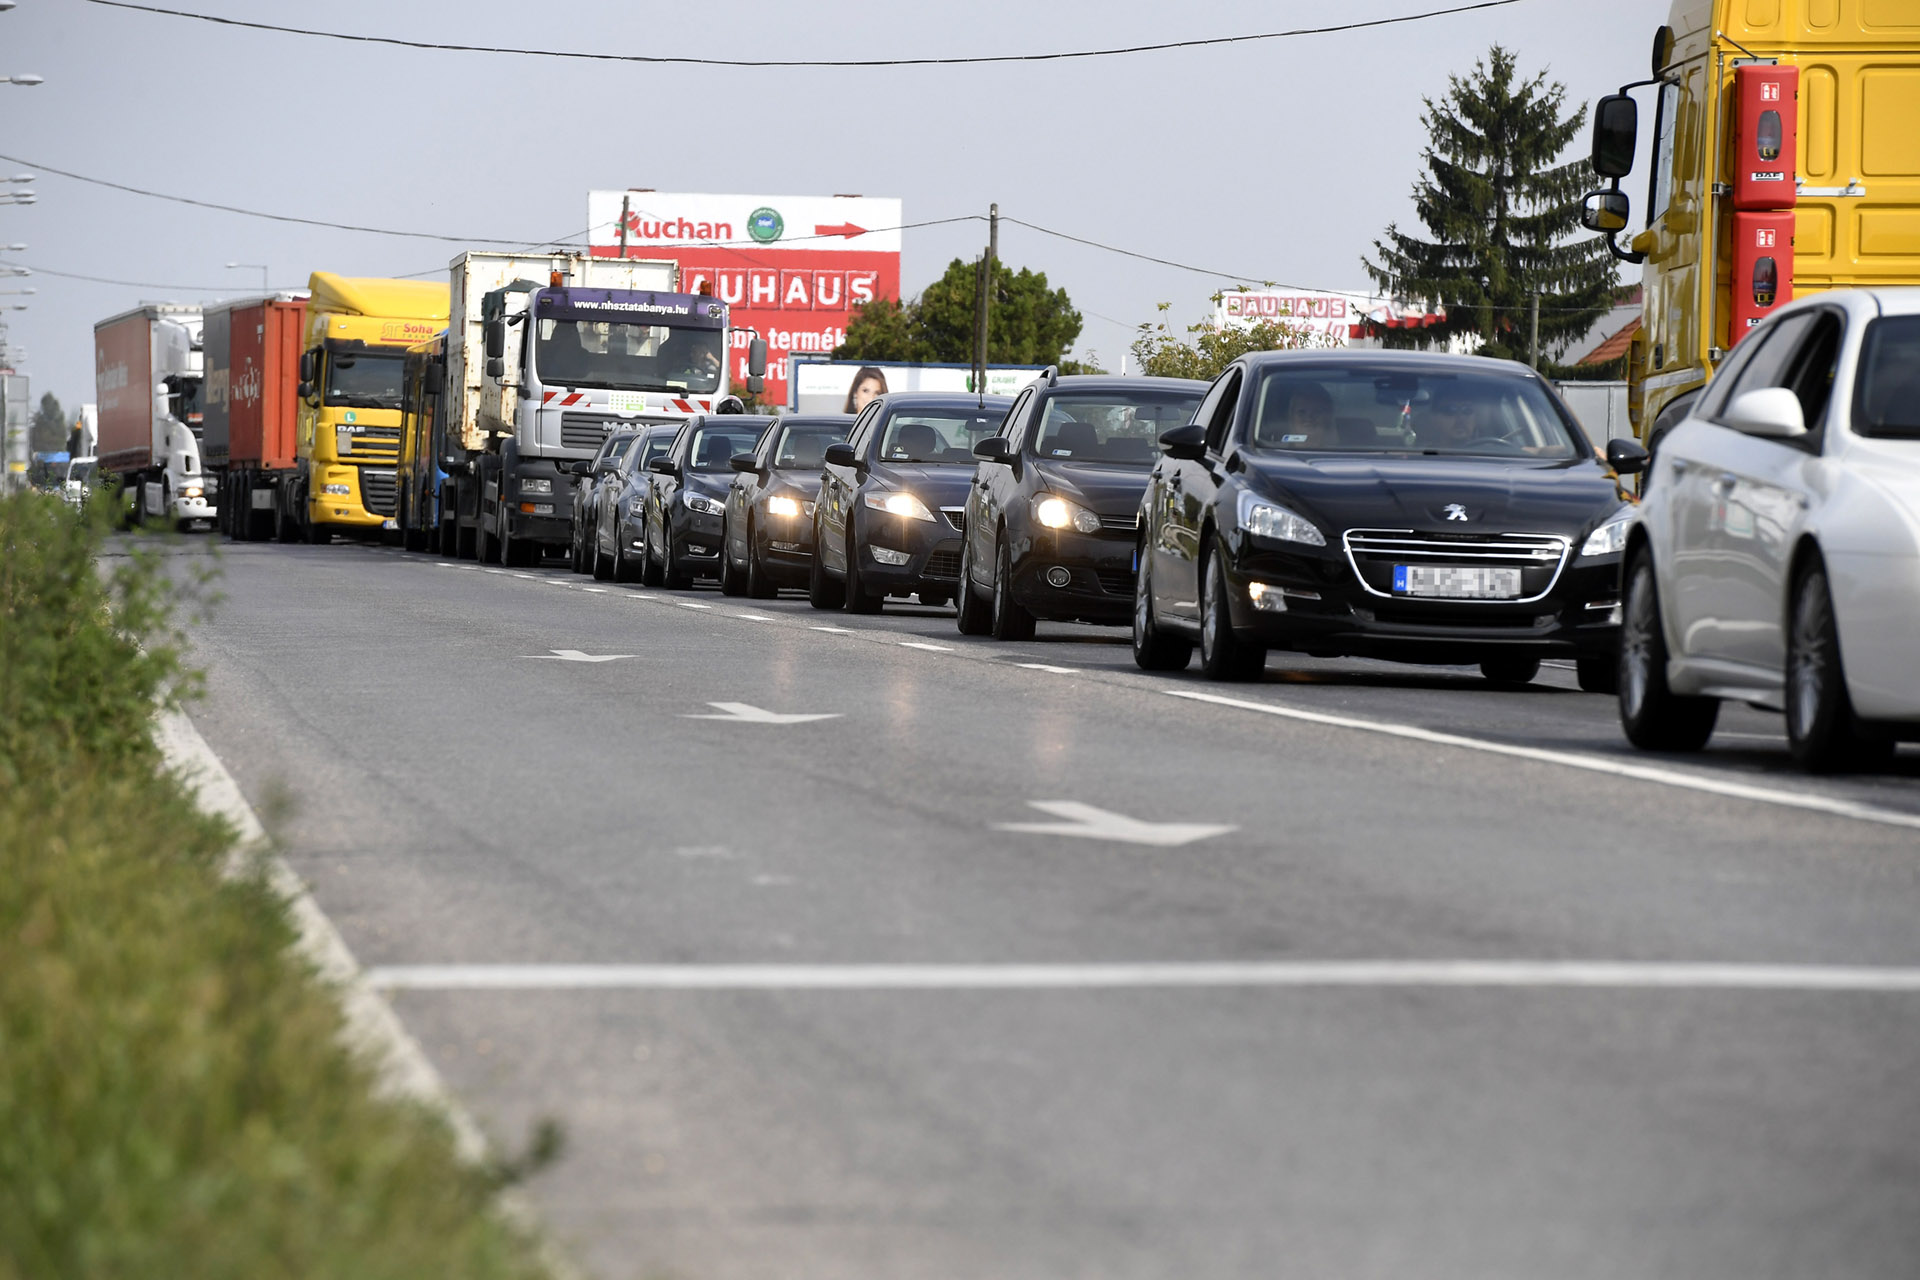 Baleset miatt orbitális a torlódás Budapest felé az M5-ösön